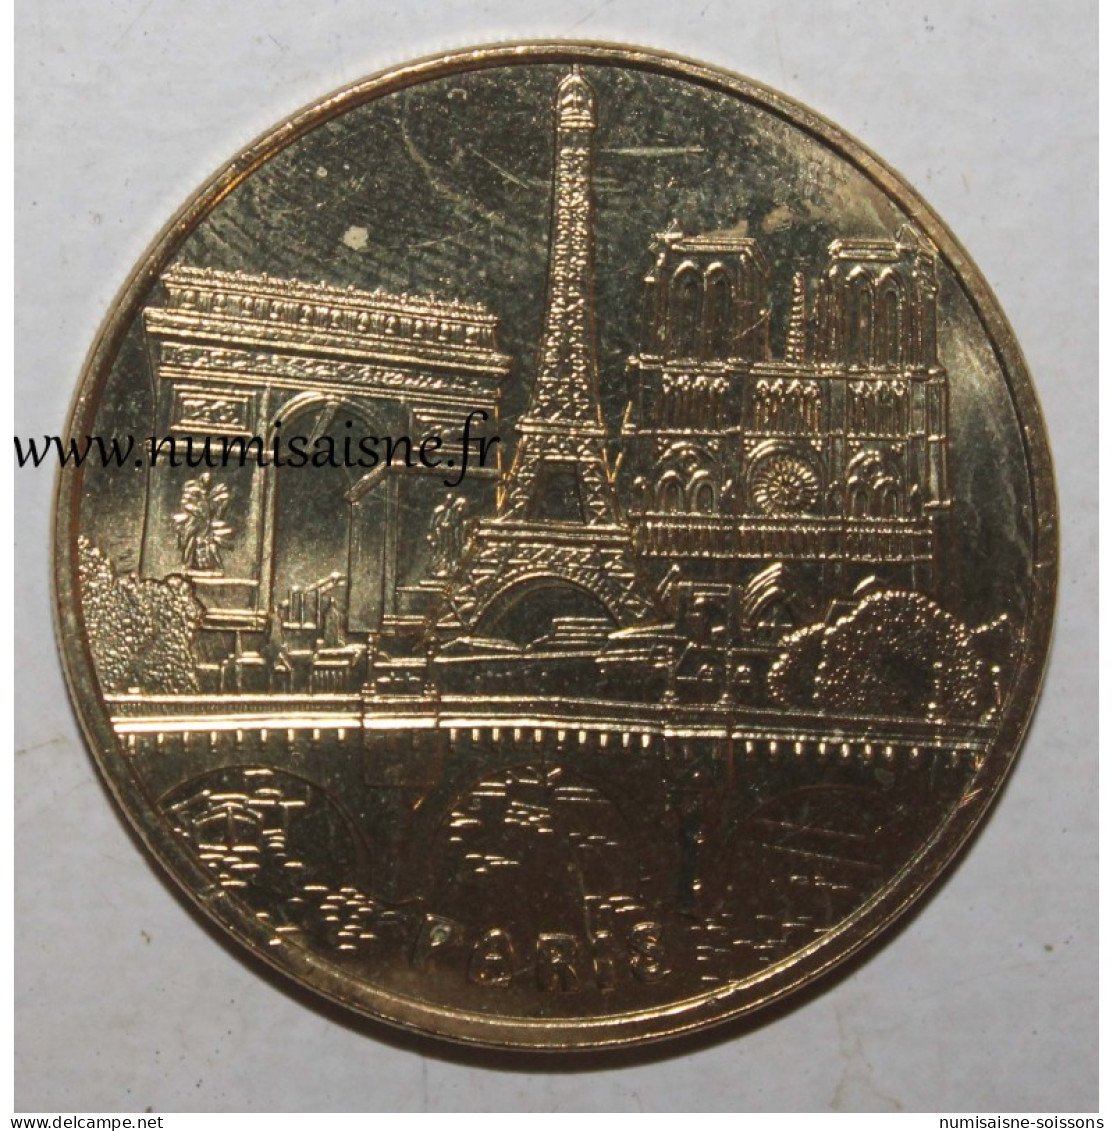 75 - PARIS - LES 3 MONUMENTS ET LE PONT NEUF - Monnaie De Paris - 2017 - Non-datés